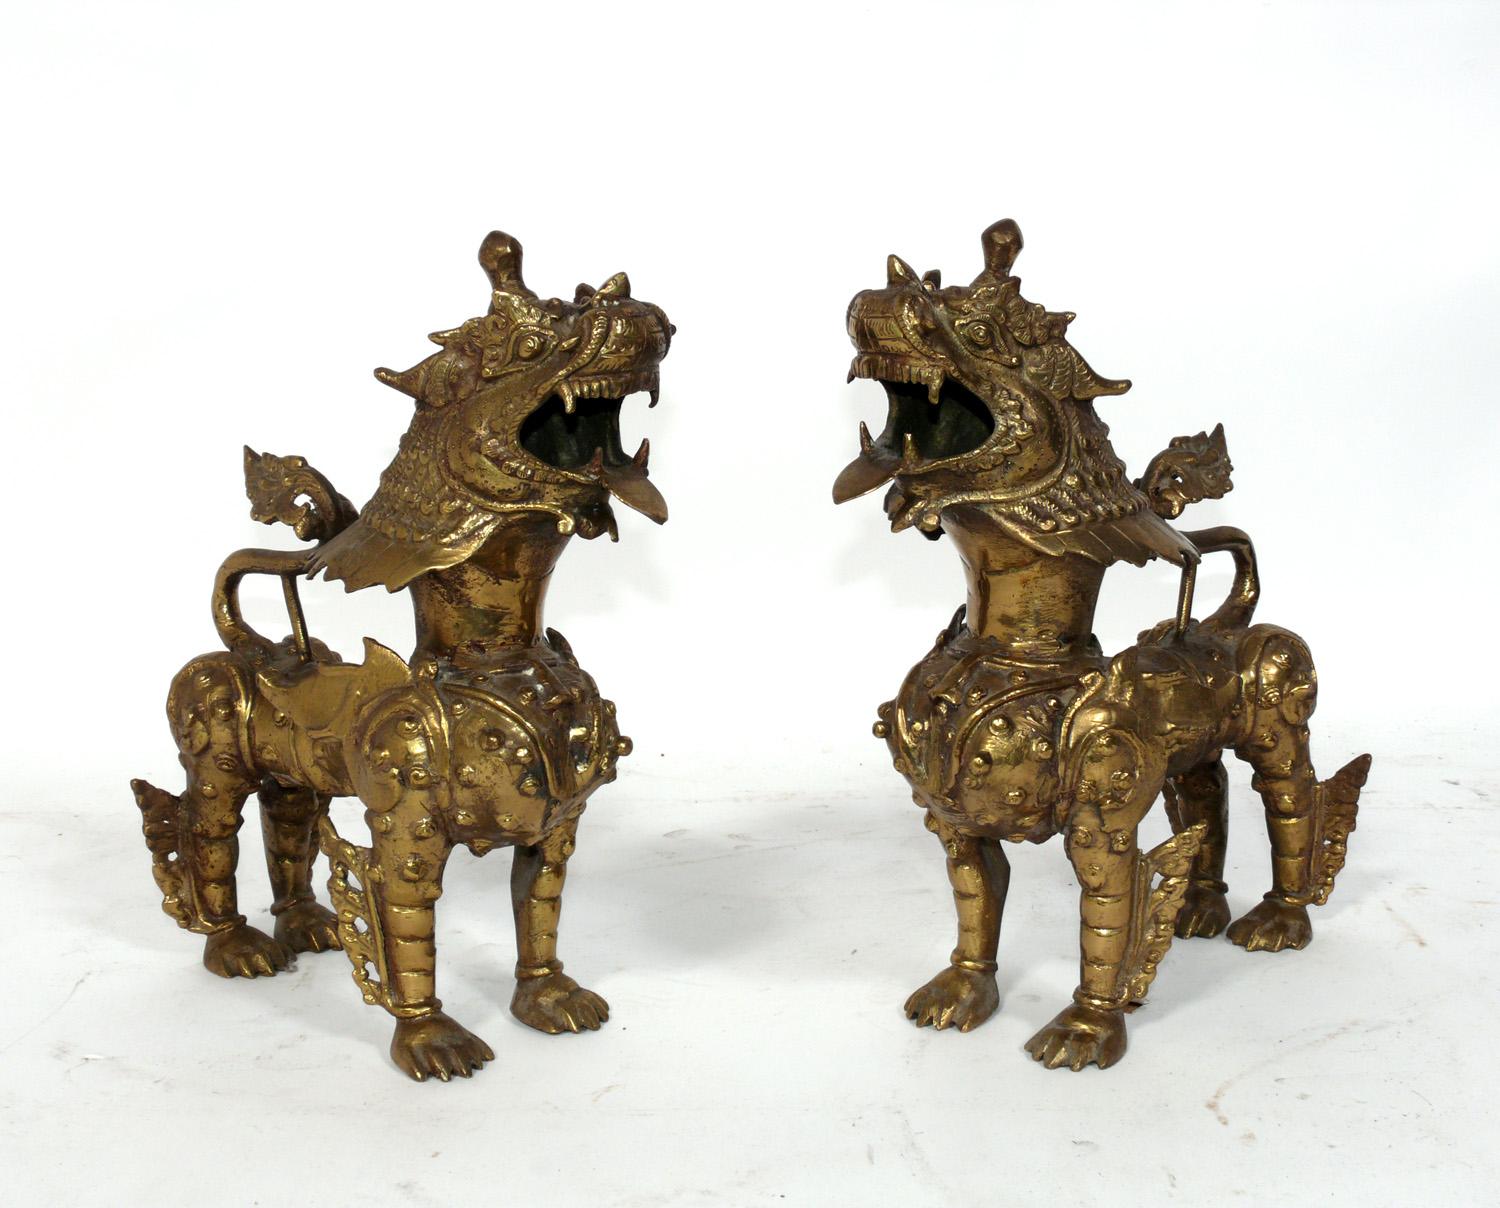 Asiatisches Bronzepaar Foo Dogs oder Kylin Dragon, wahrscheinlich tibetisch, ca. 1940er Jahre oder früher. Sie haben ihre warme Originalpatina behalten. Sie wurden aus dem Nachlass eines japanischen Amerikaners in Manhattan erworben, der in den